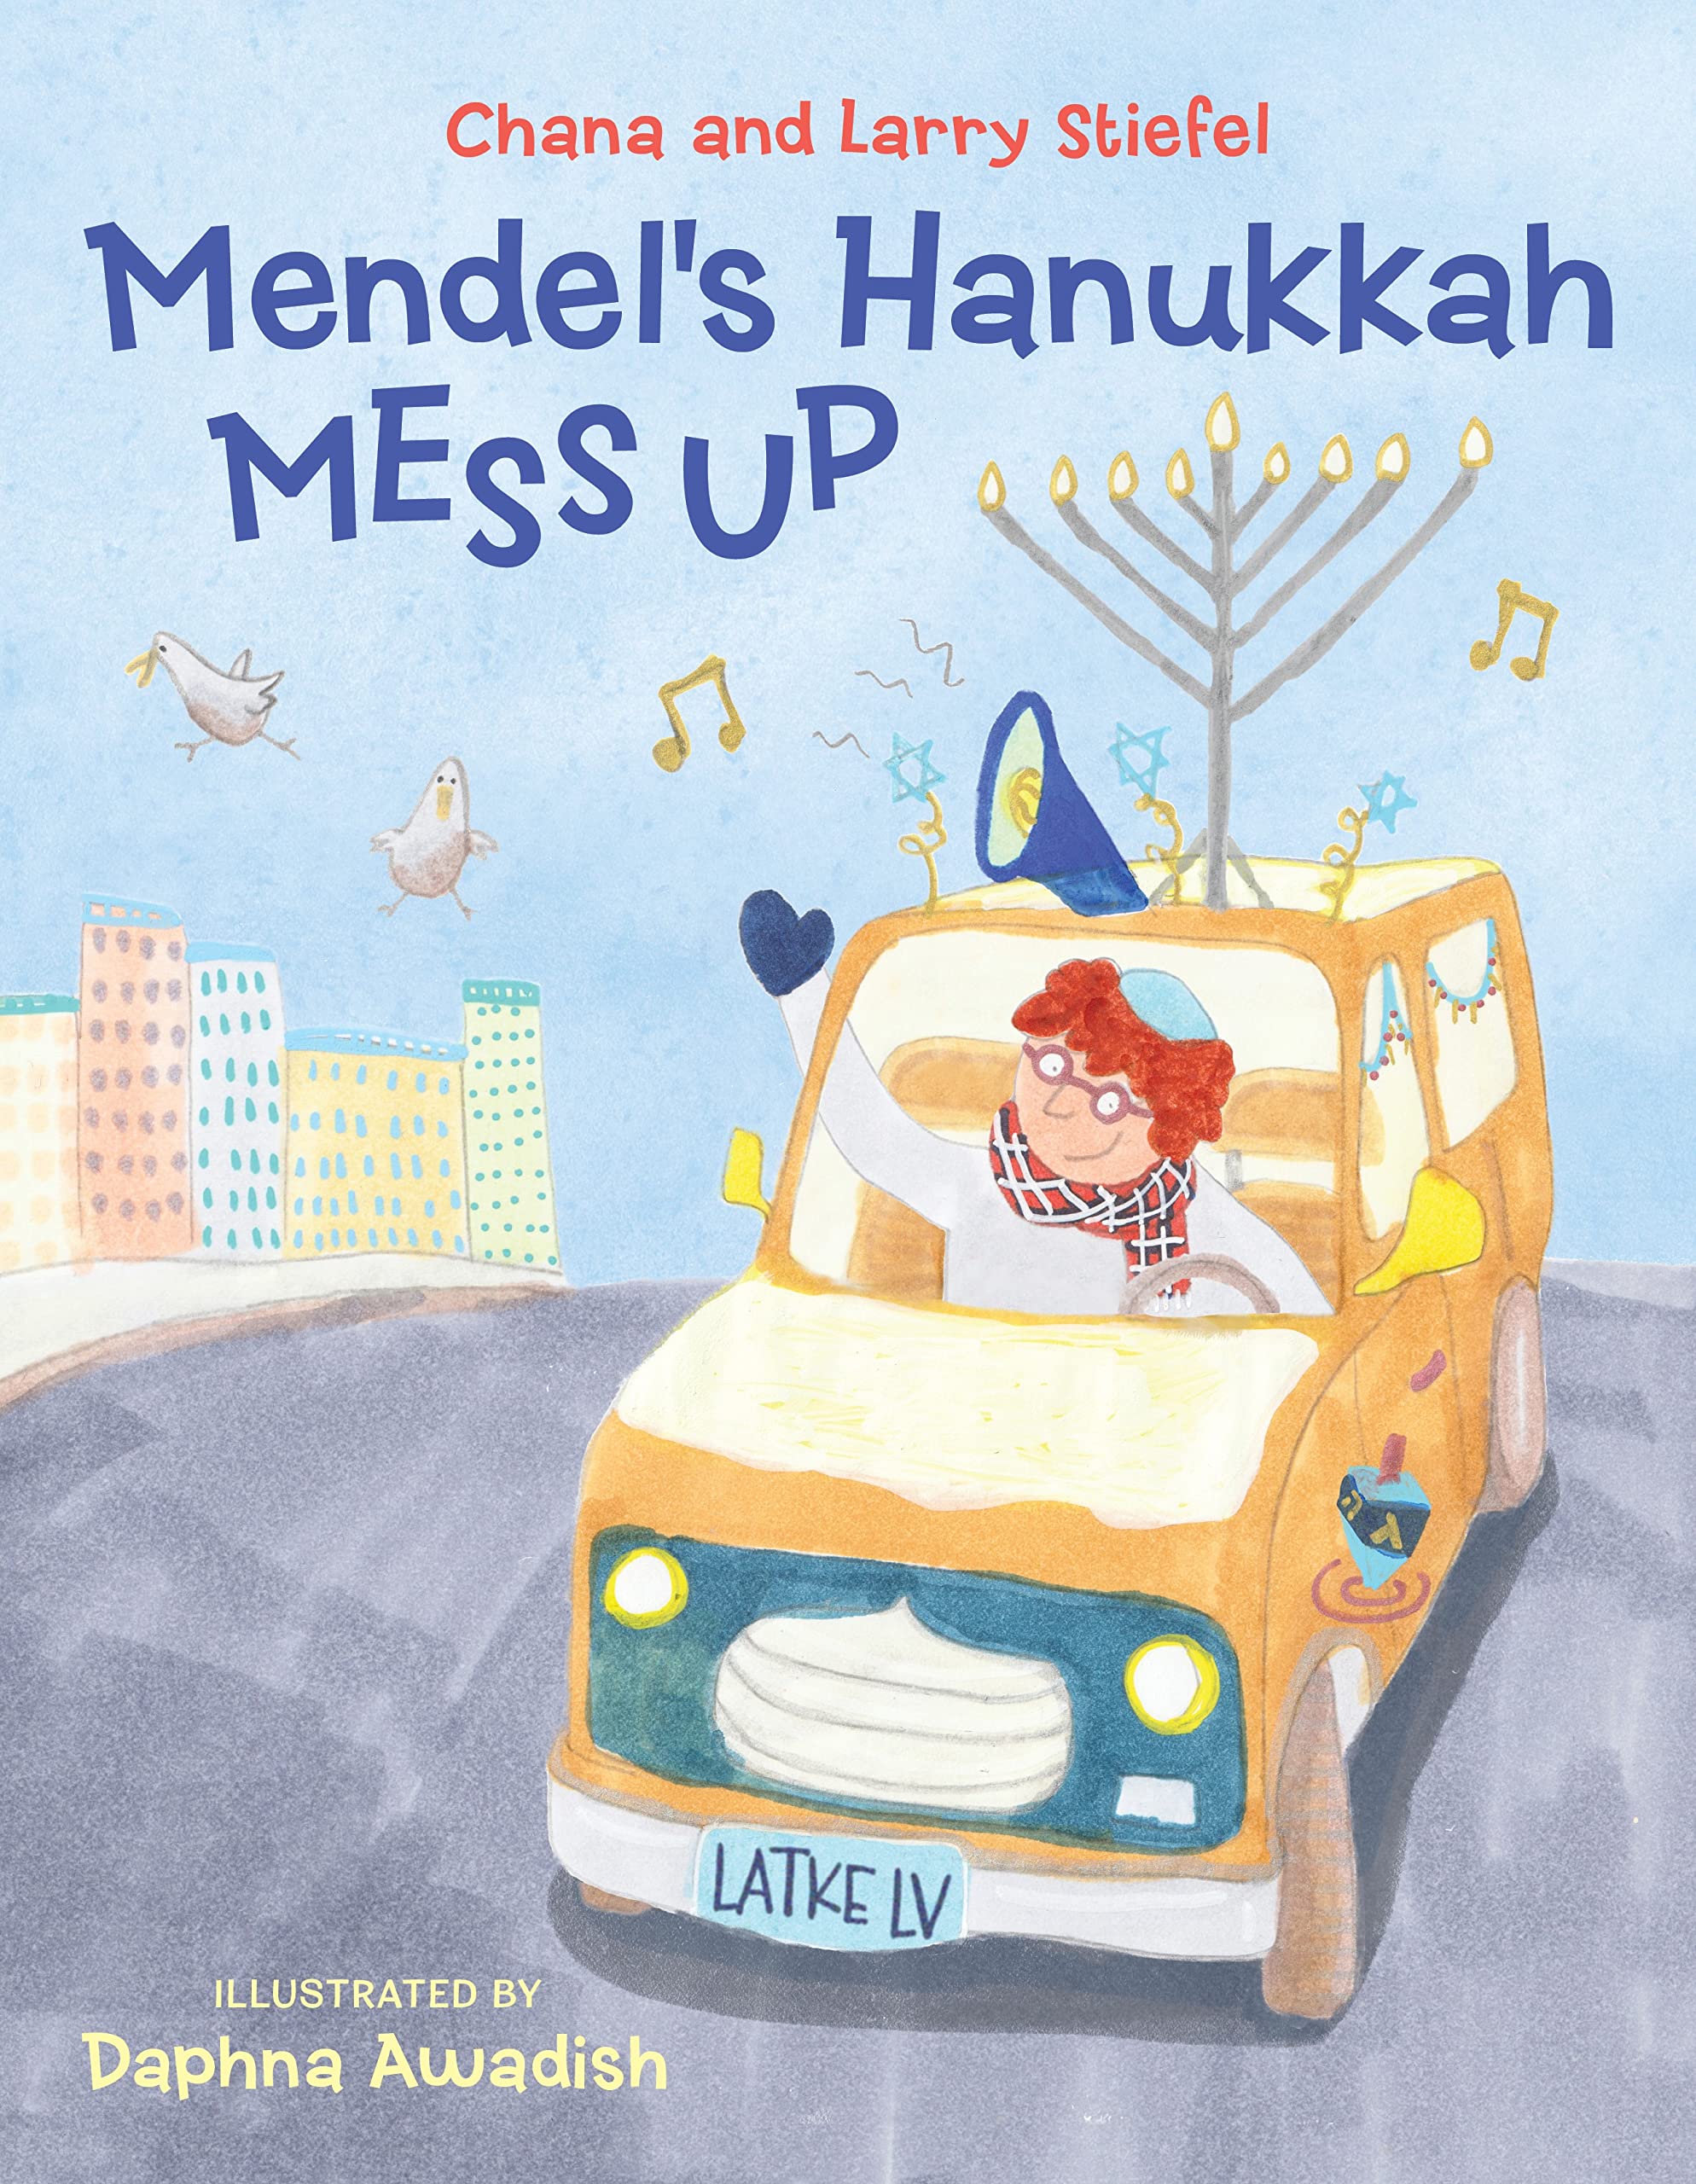 Mendel’s Hanukkah Mess Up